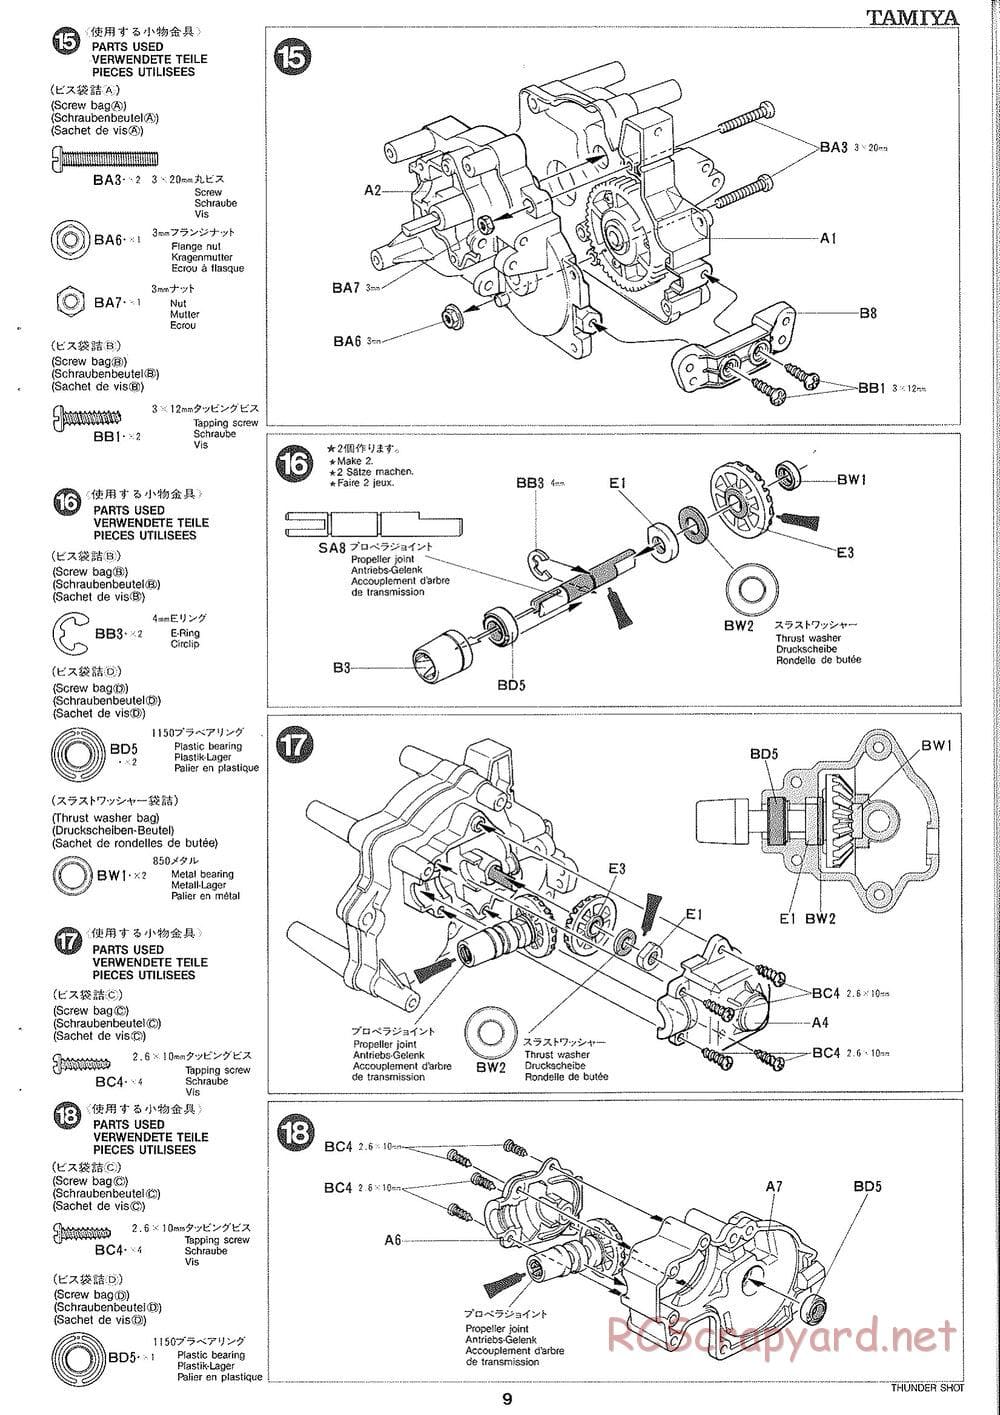 Tamiya - Thunder Shot - TS1 Chassis - Manual - Page 10